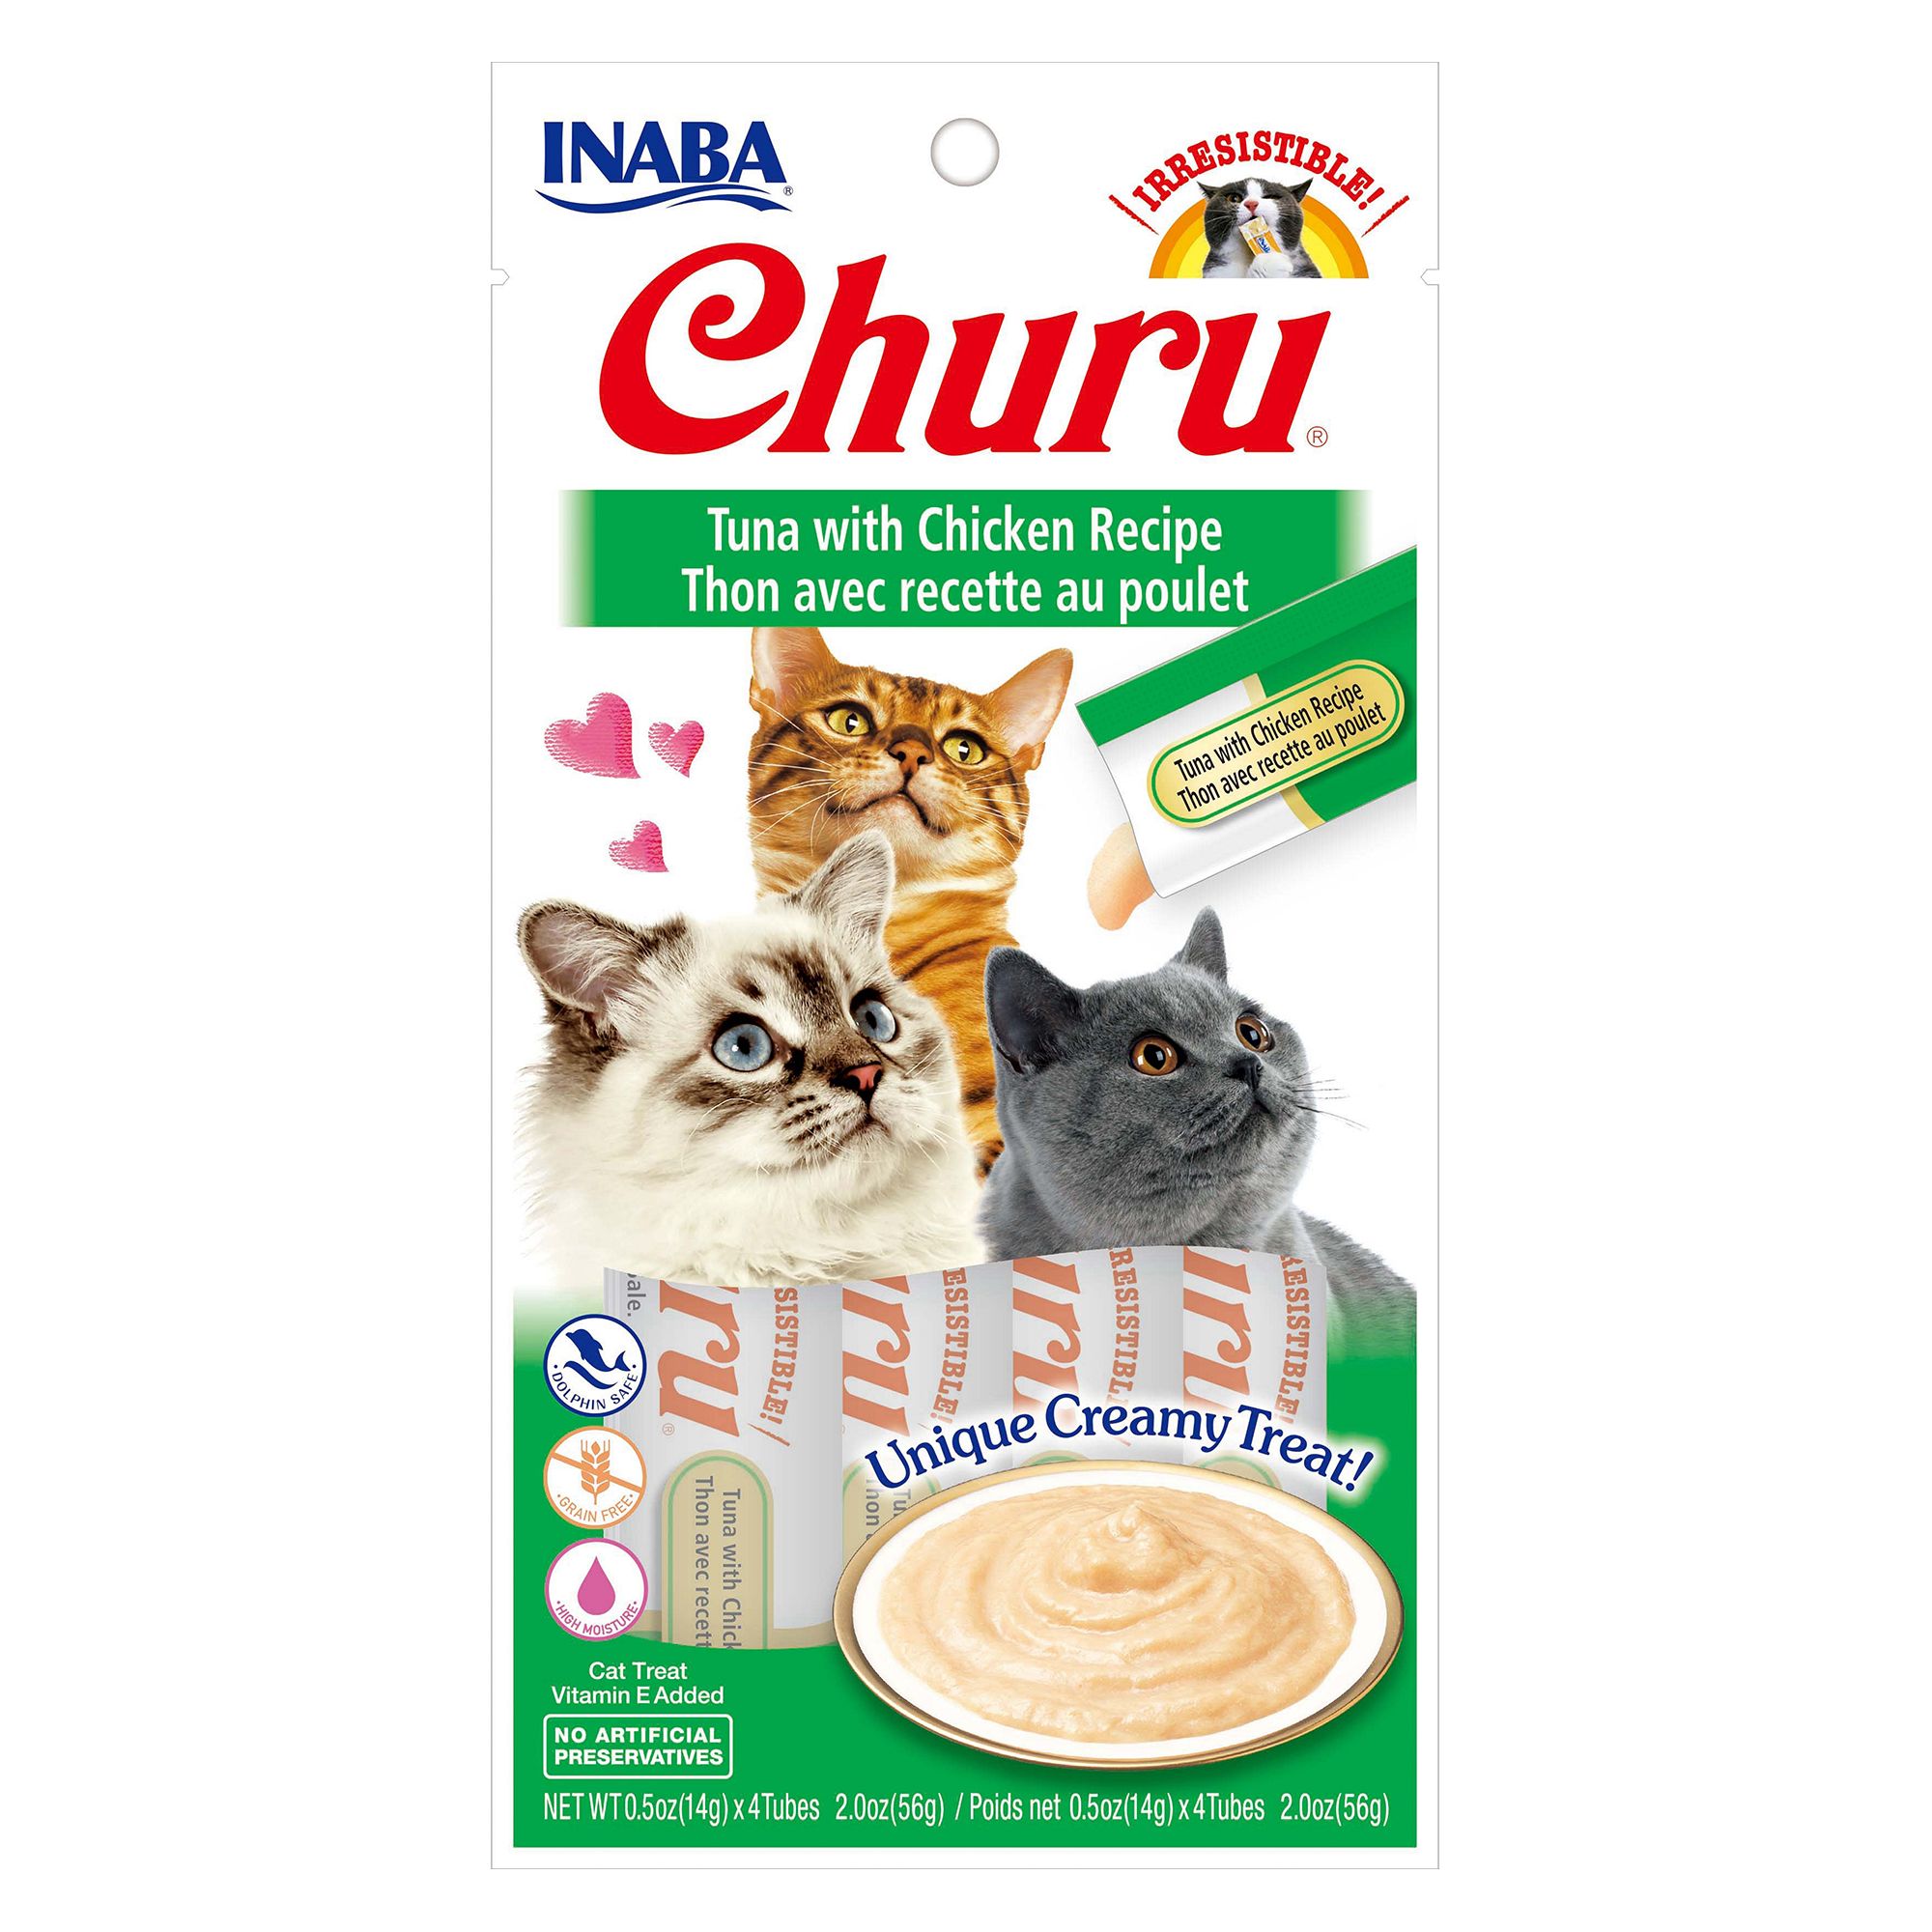 Inaba Churu Creamy Puree Cat Treat 